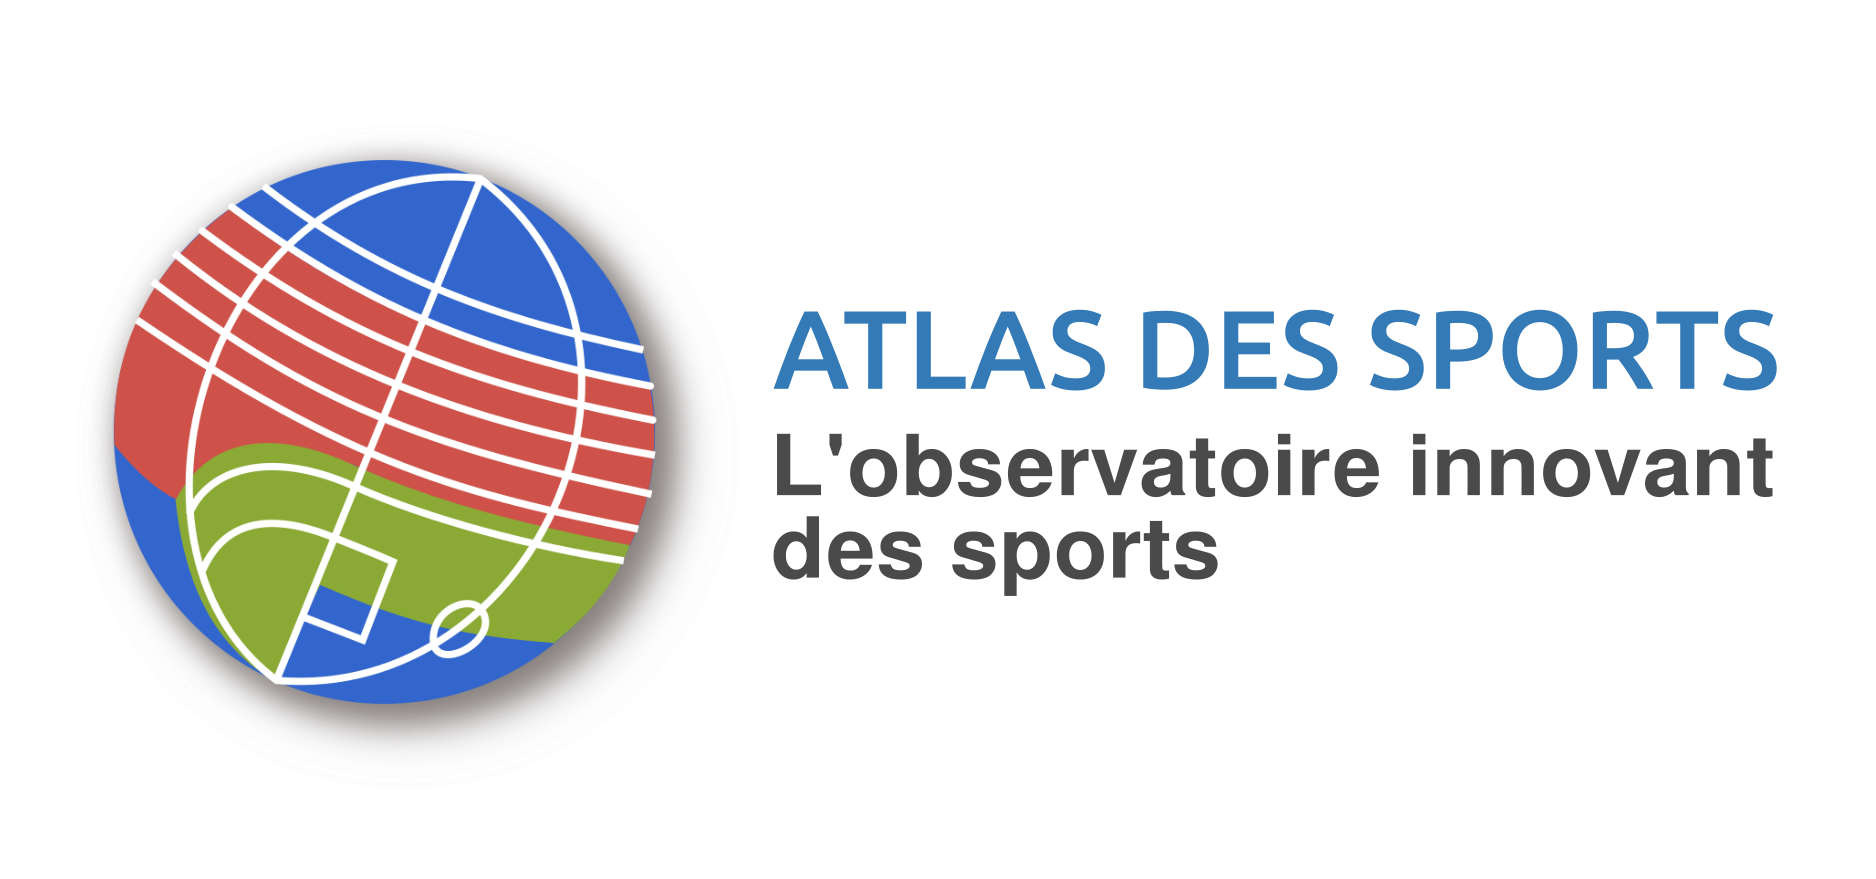 Atlas des sports